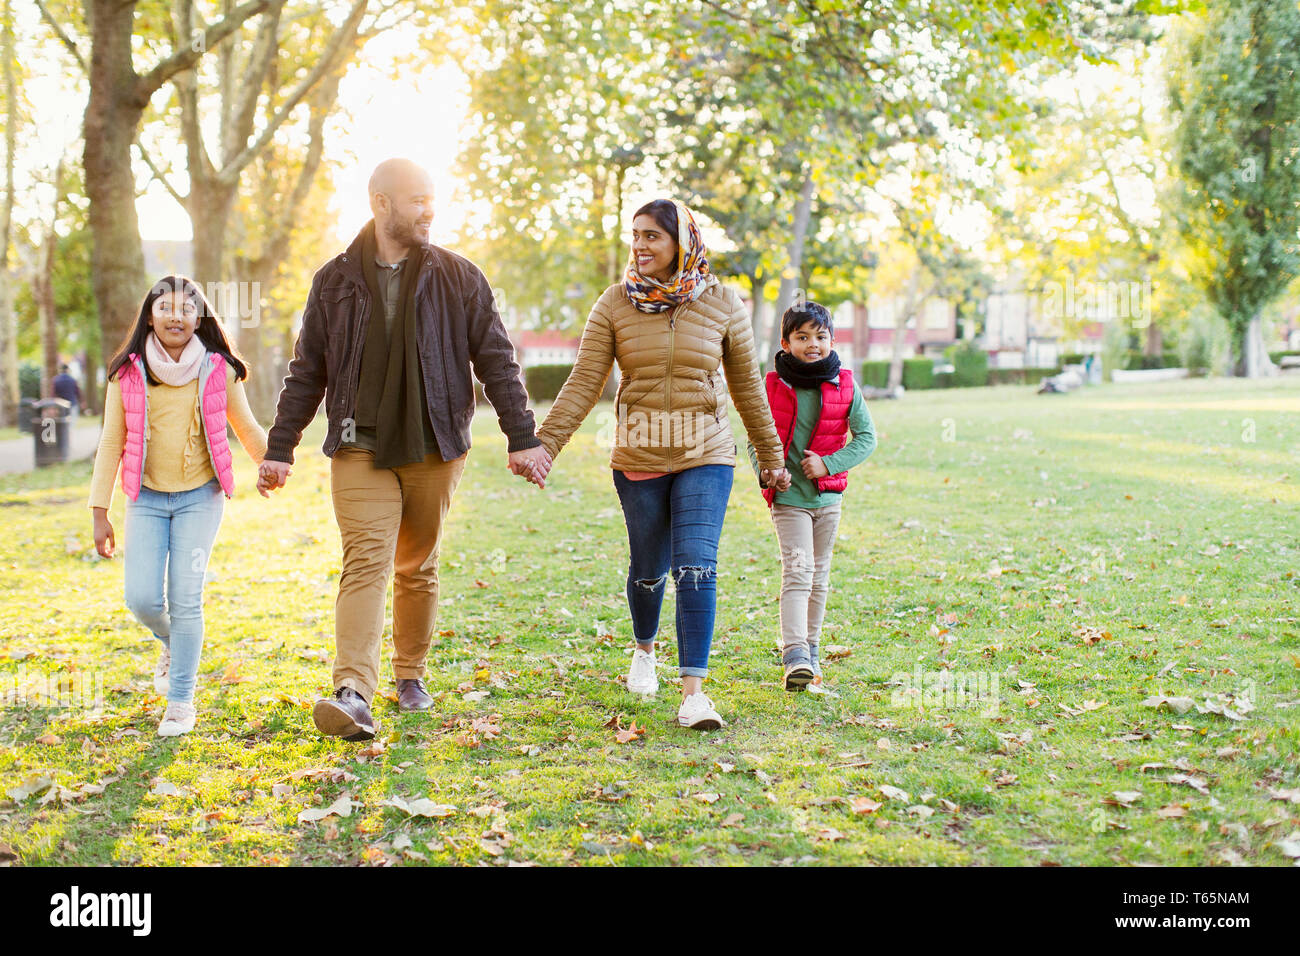 La famiglia musulmana Holding Hands, passeggiate nella soleggiata autunno park Foto Stock